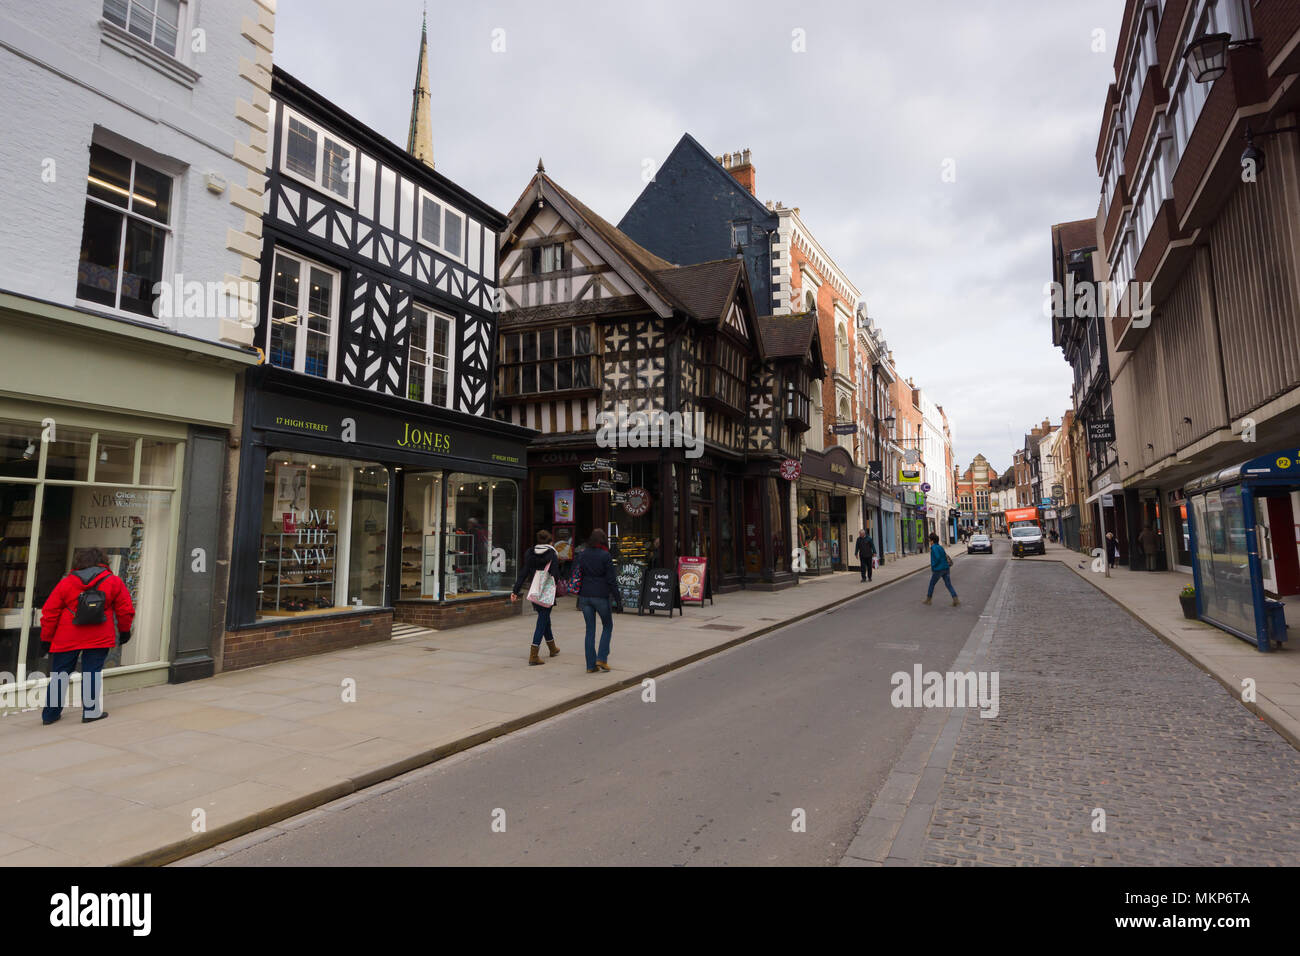 In stile Tudor edifici e facciate su high street nel centro di Shrewsbury una città storica in Inghilterra risalente al periodo medievale Foto Stock